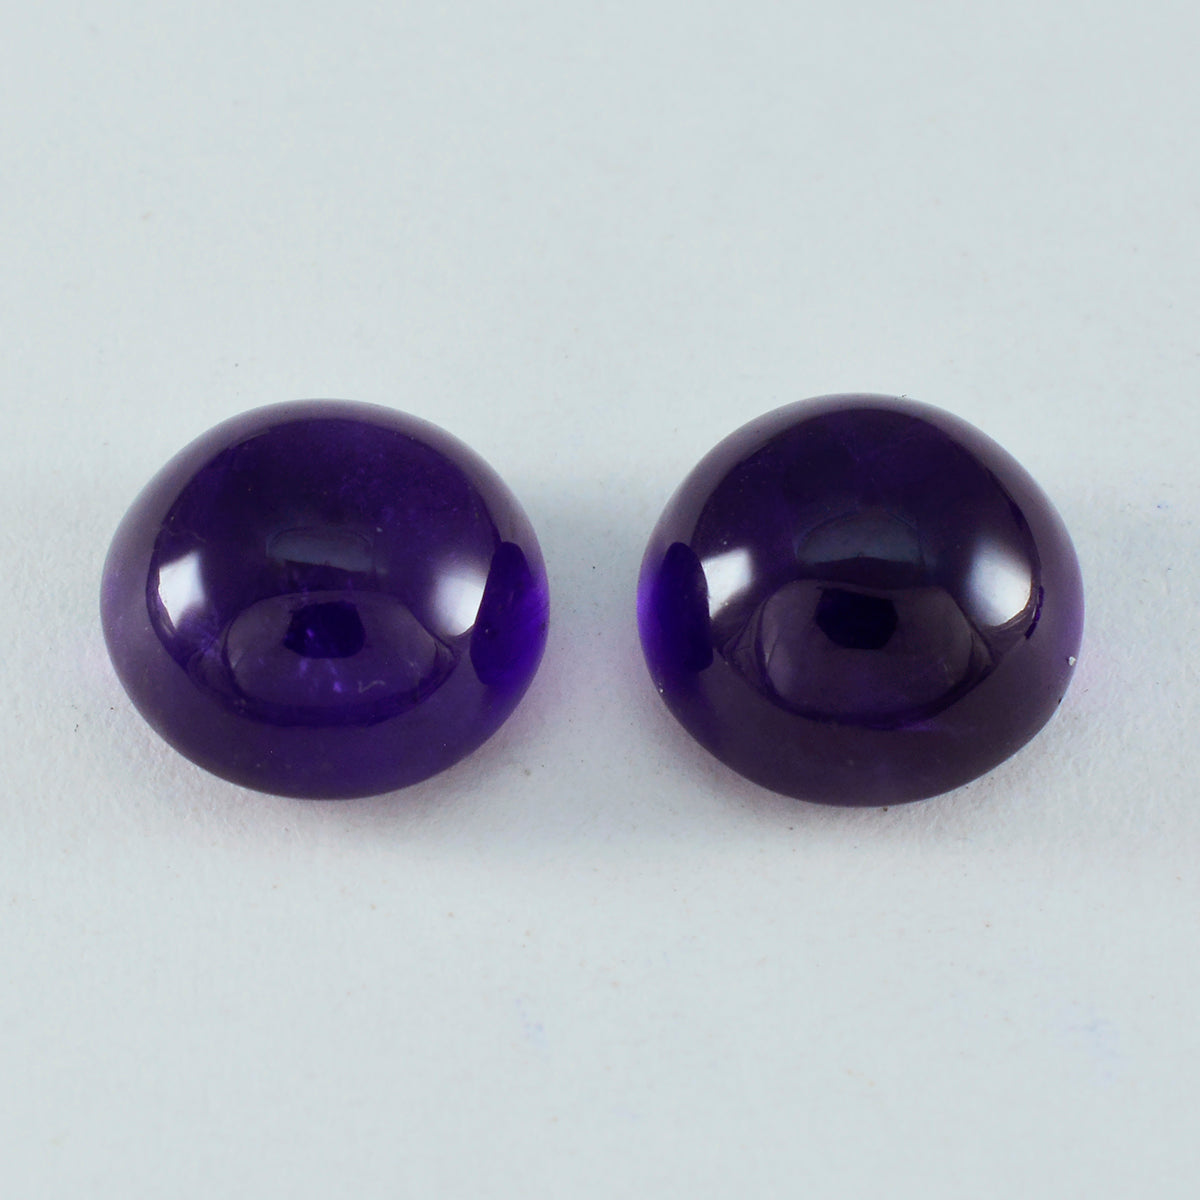 Riyogems 1 Stück lila Amethyst-Cabochon, 12 x 12 mm, runde Form, A+-Qualität, lose Edelsteine